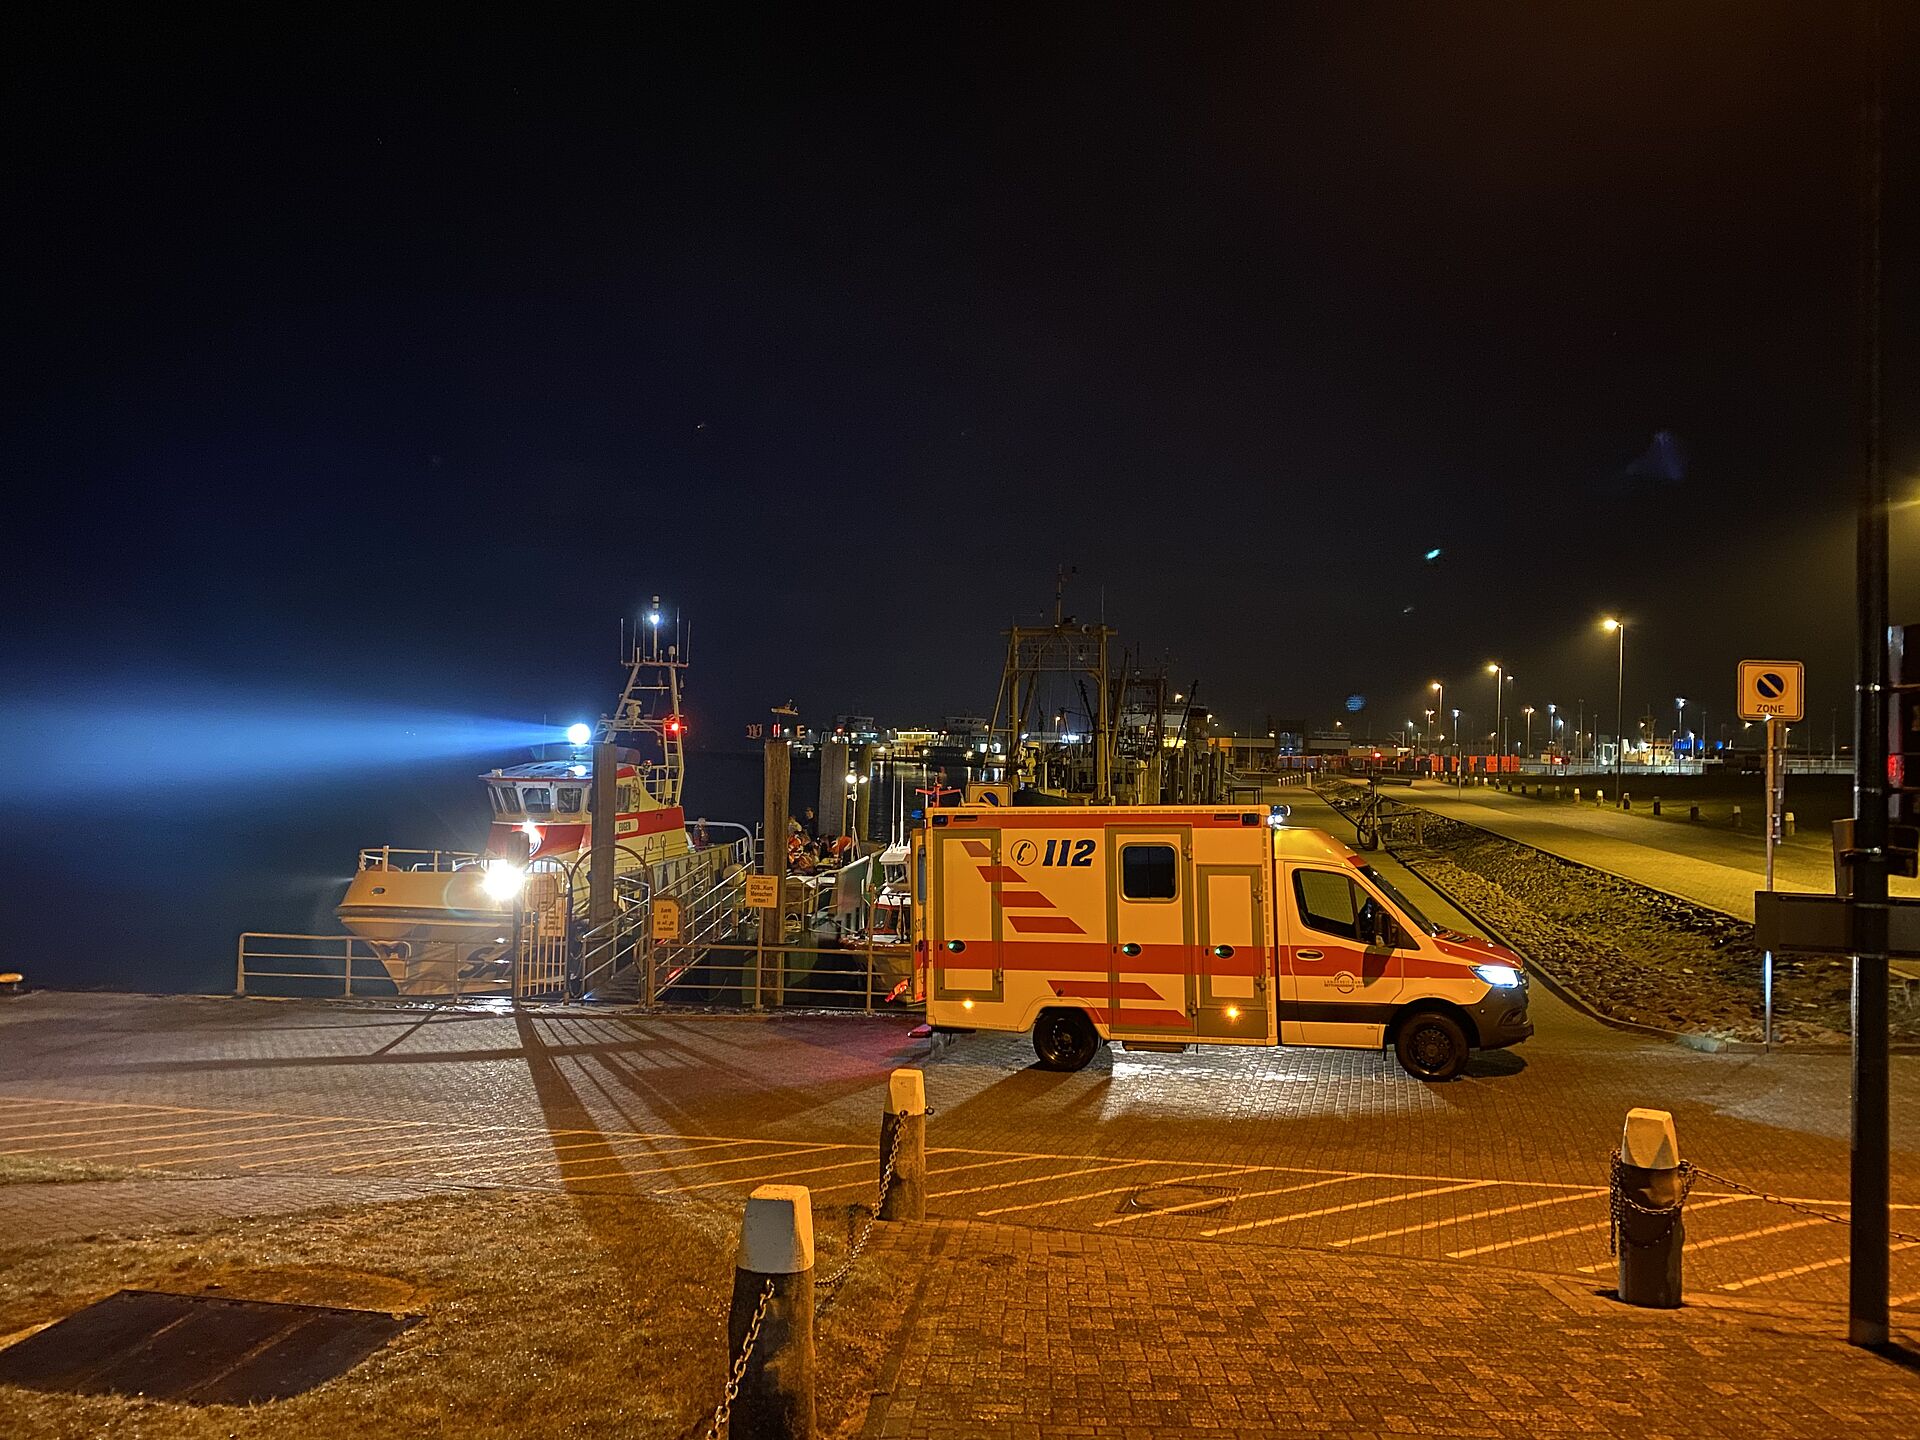 Nachtszene im Hafen: Im Vordergrund am Anleger steht ein Rettungswagen, darinter hat ein Seenotreettungskreuzer festgemacht. Seine Scheinwerfer leuchten in den dunklen Himmel über dem Hafengelände.